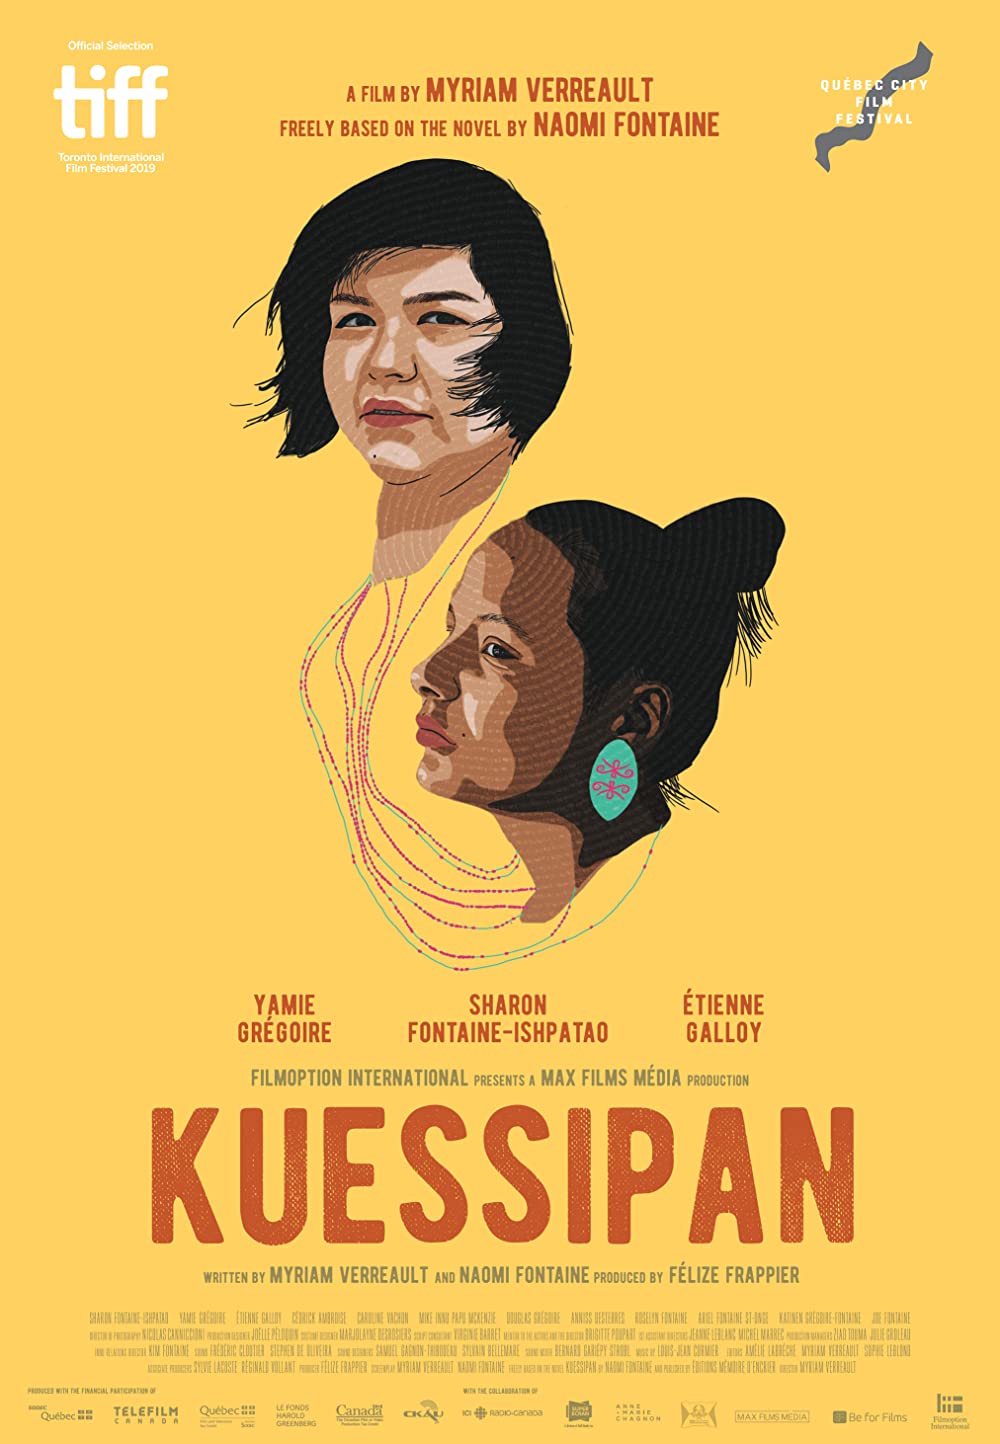 Filmbeschreibung zu Kuessipan